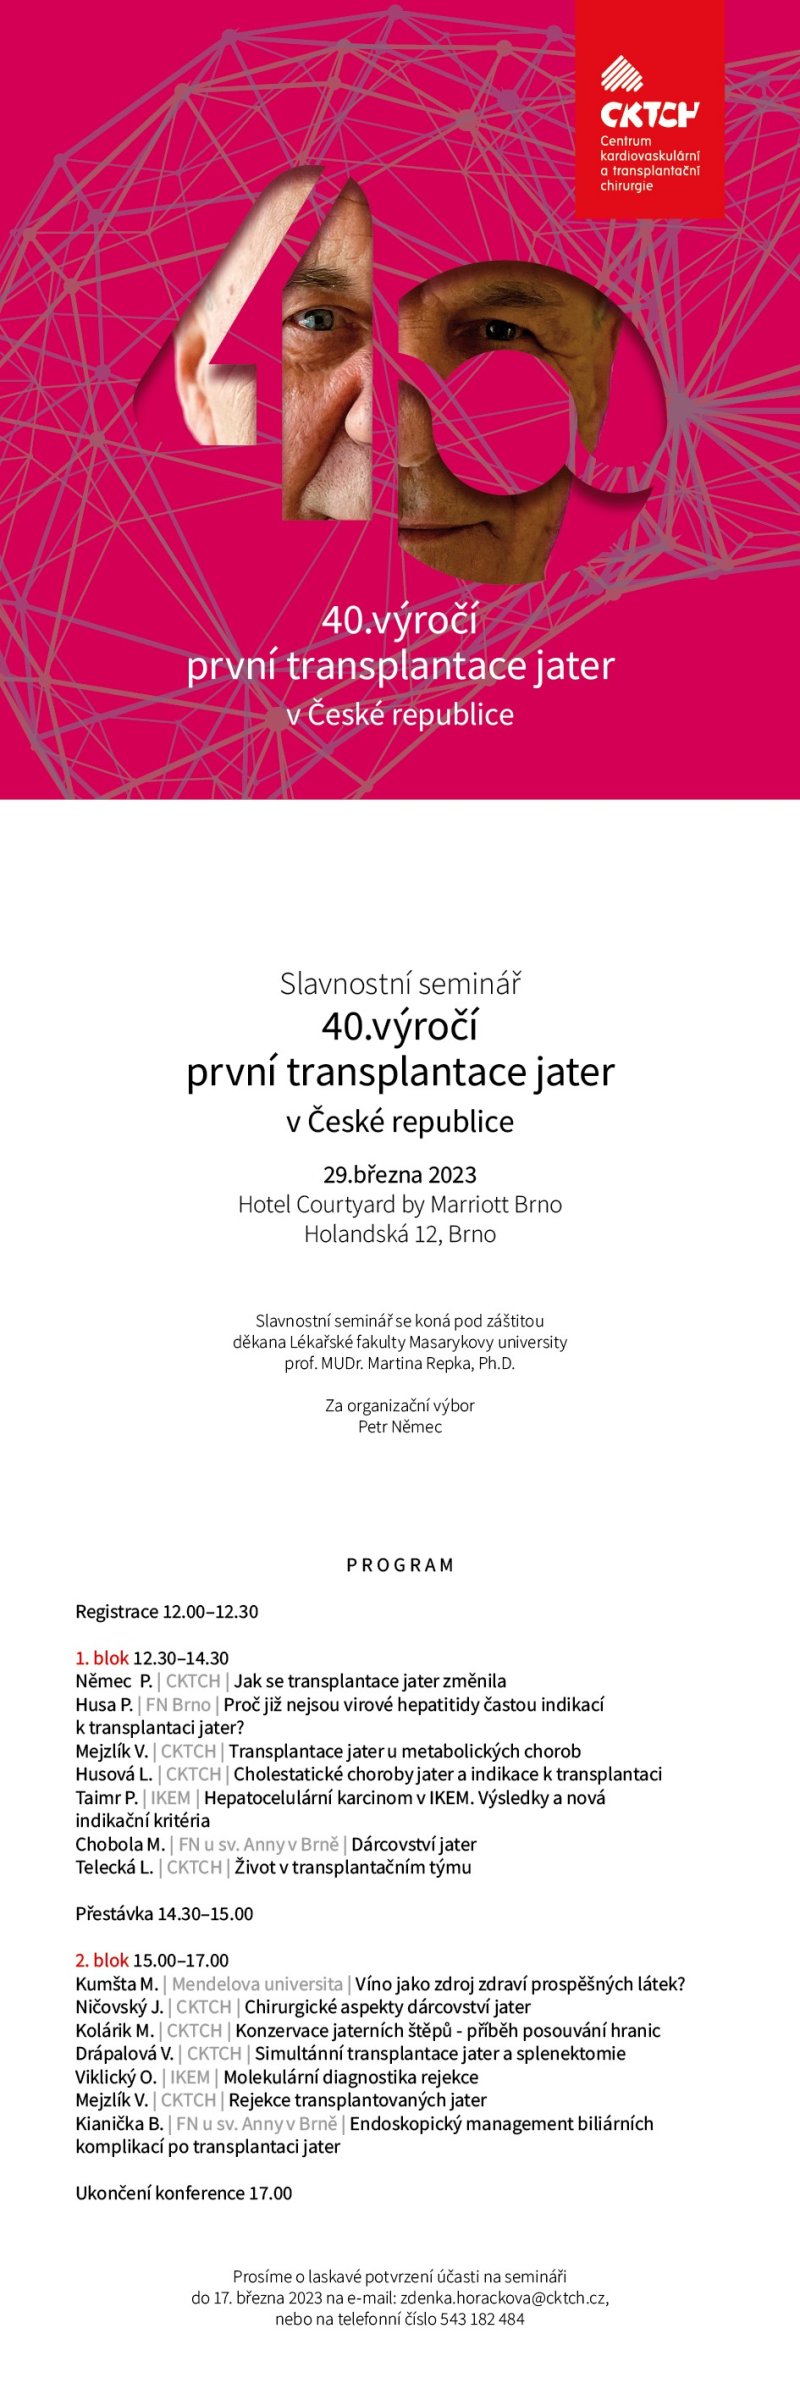 CKTCH pořádá slavnostní seminář: 40. výročí první transplantace jater v České republice (tehdejším Československu)